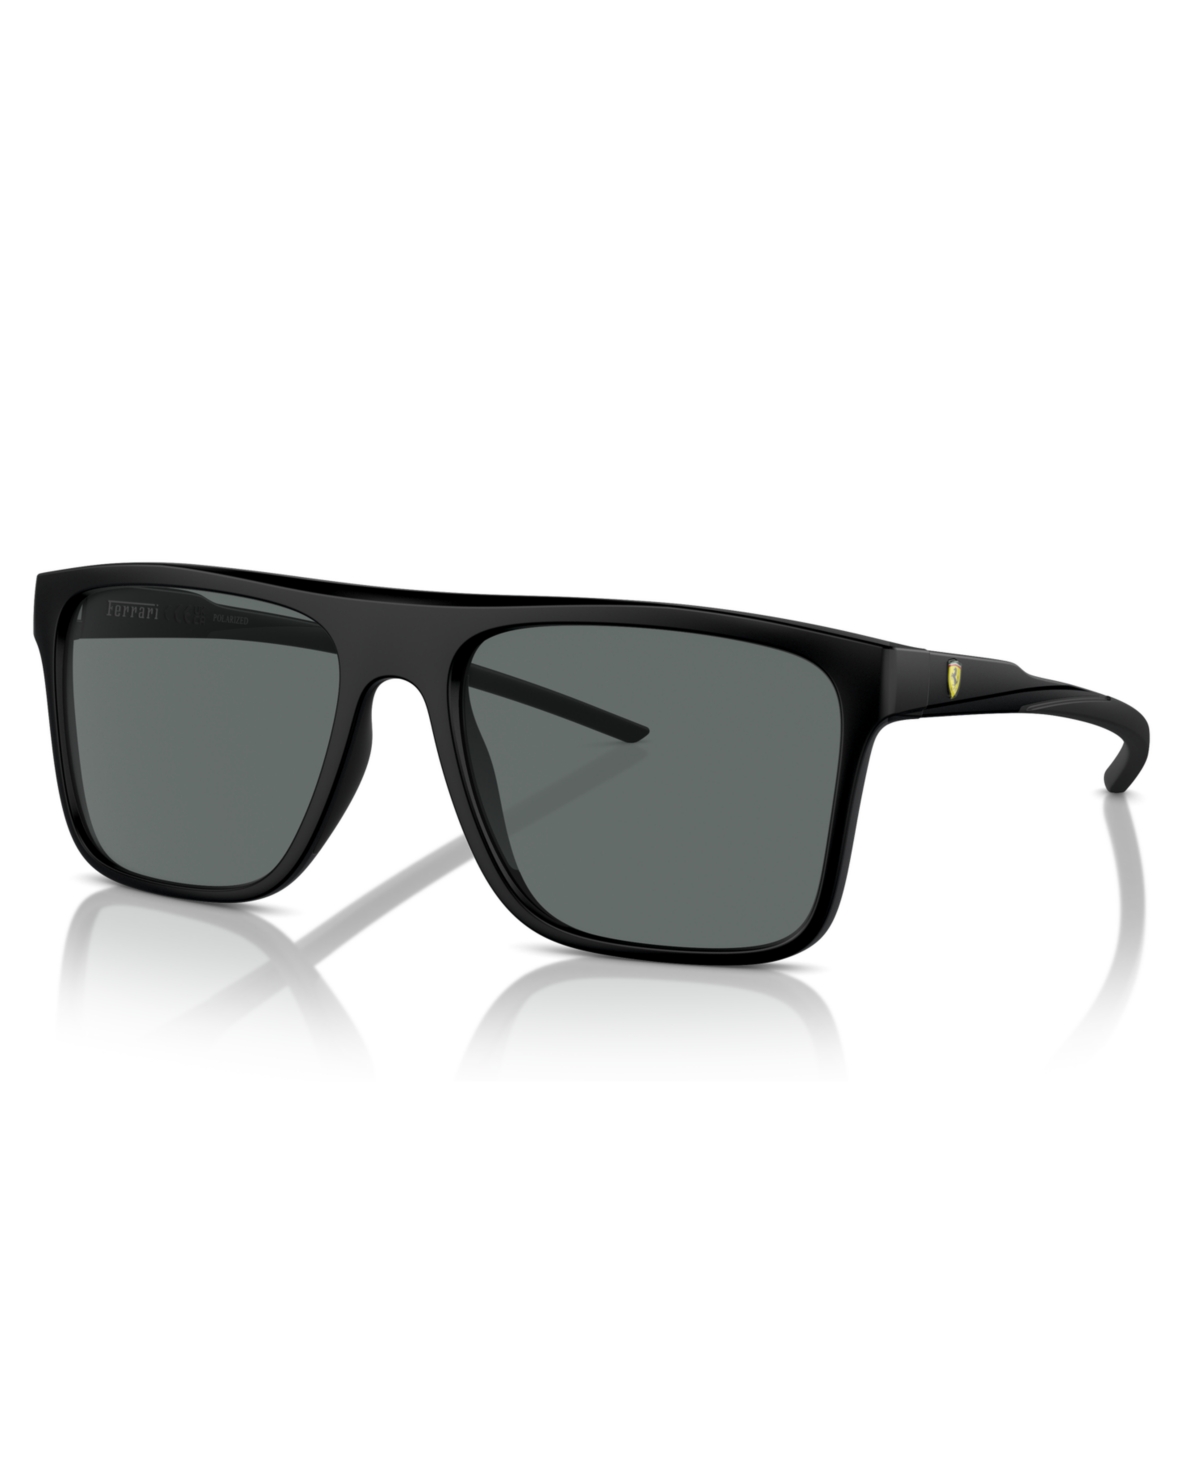 Scuderia Ferrari Men's Polarized Sunglasses, FZ6006 - Matte Black